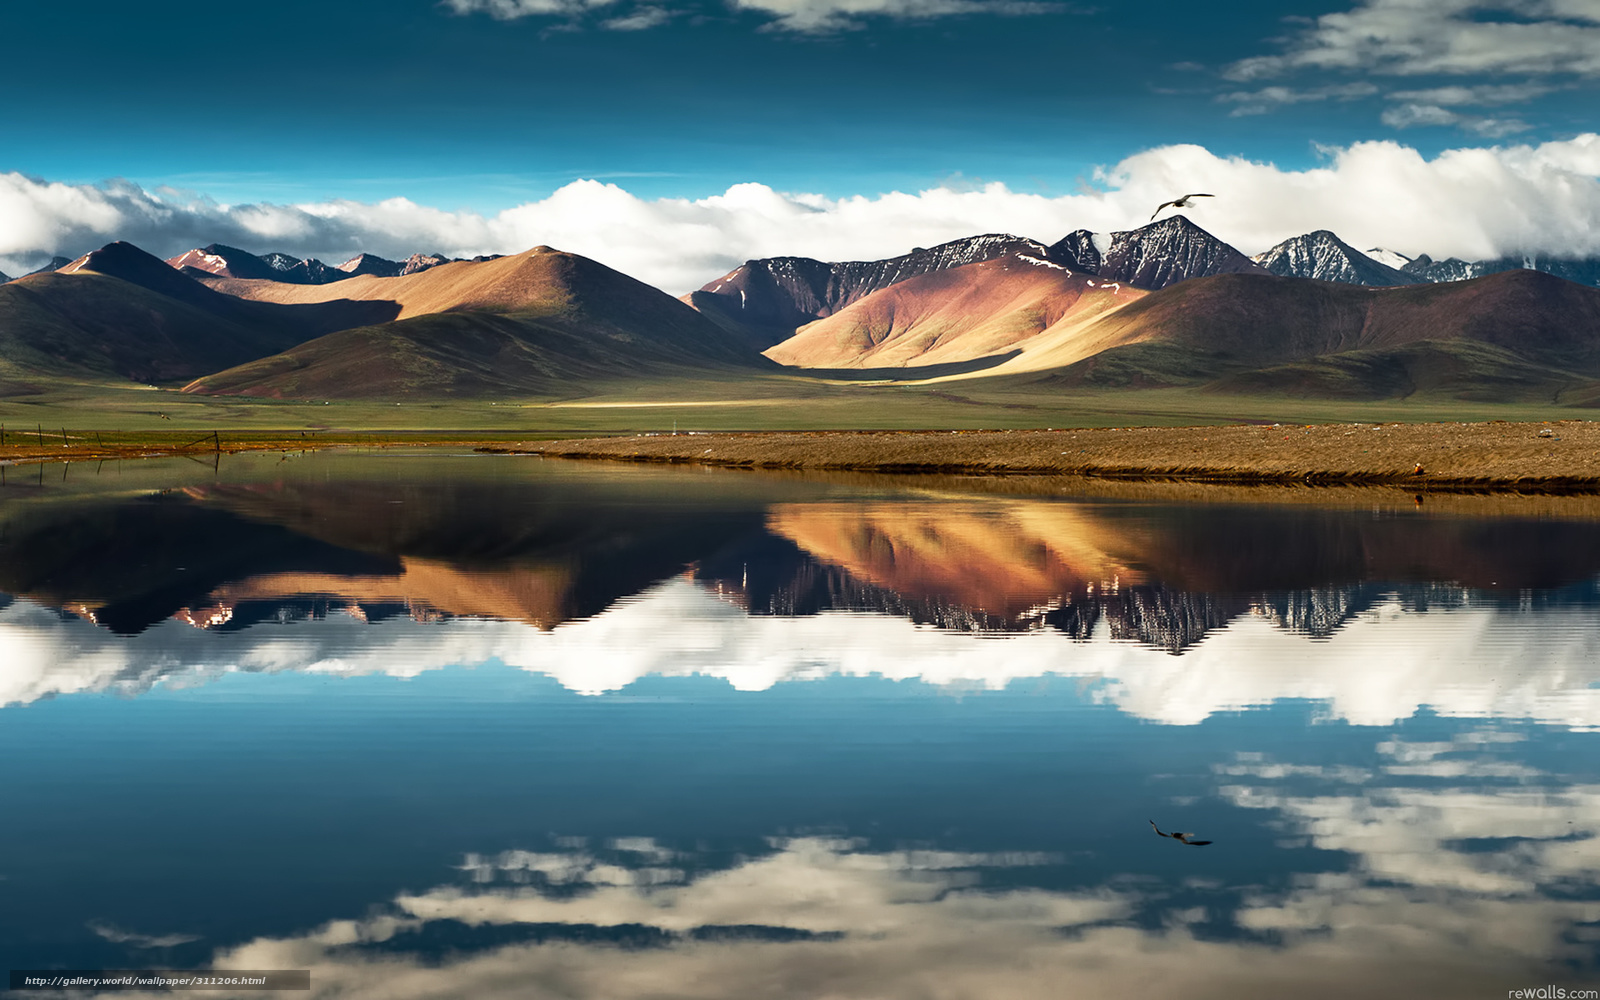 Wallpaper China Tibet Mountains Desktop In